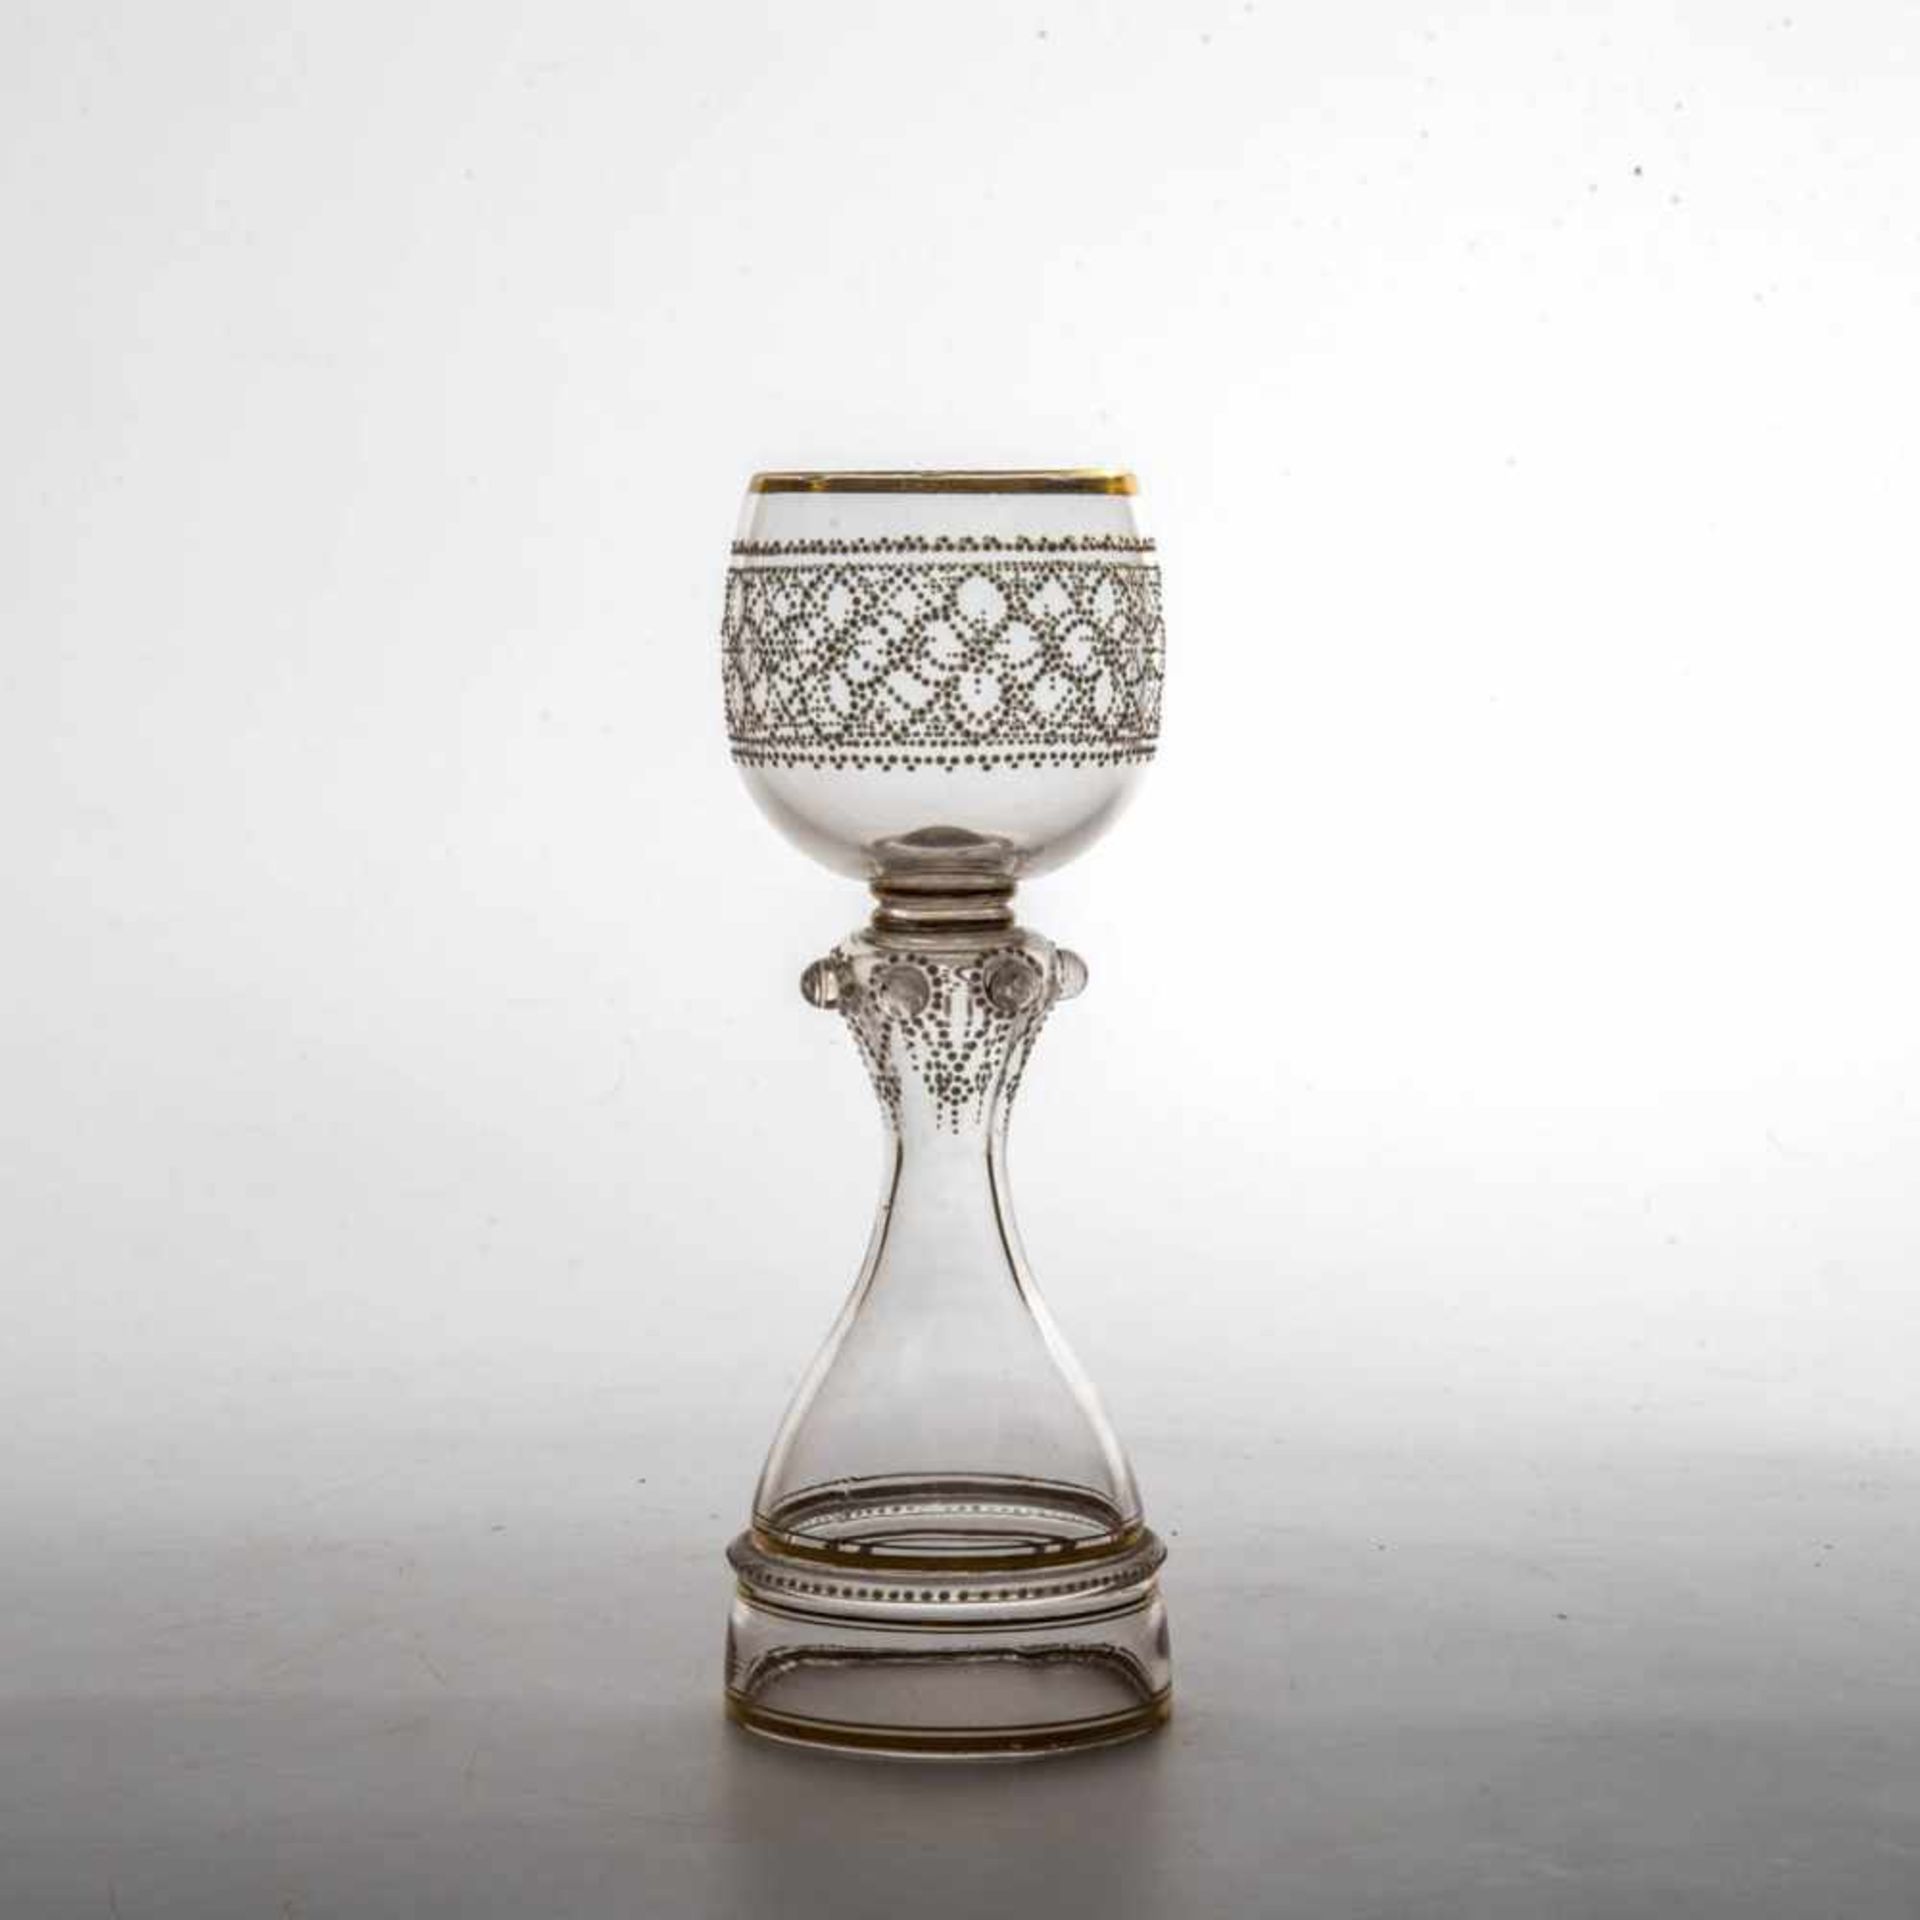 Pokal mit Hohlfuß, 19. Jh. Farbloses Glas. Runder glockenförmiger Hohlfuß mit schmalen Goldrändern